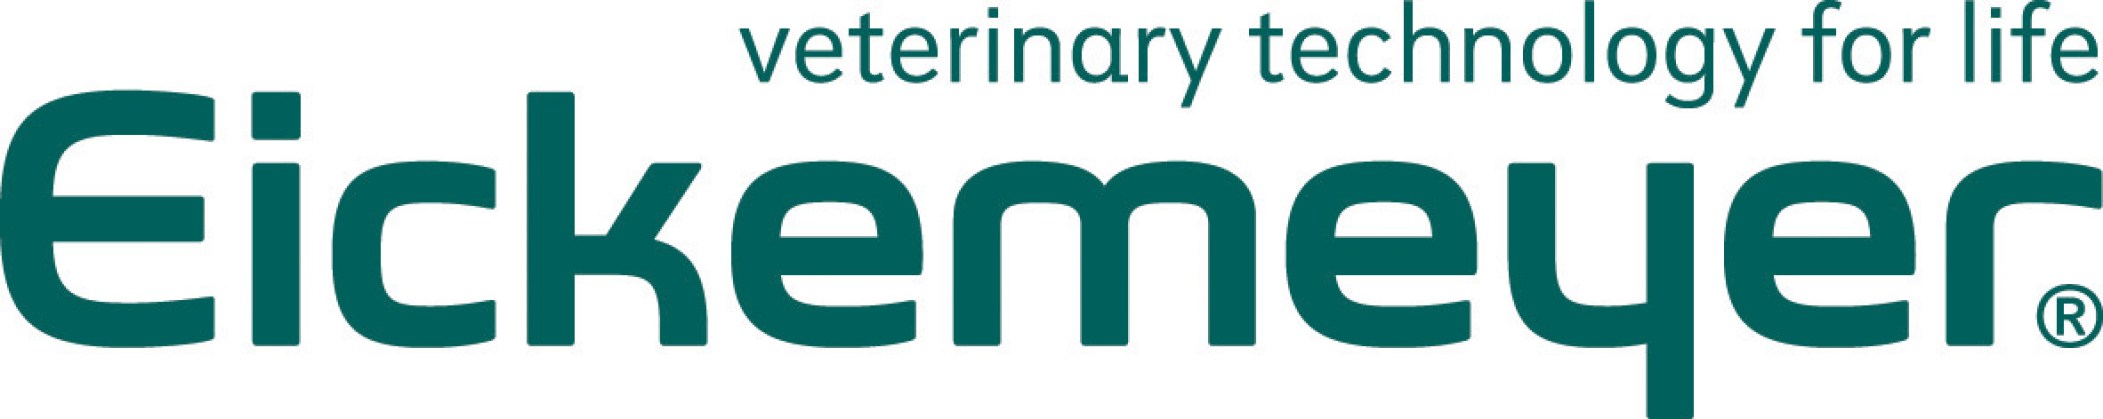 Eickemeyer-Logo5